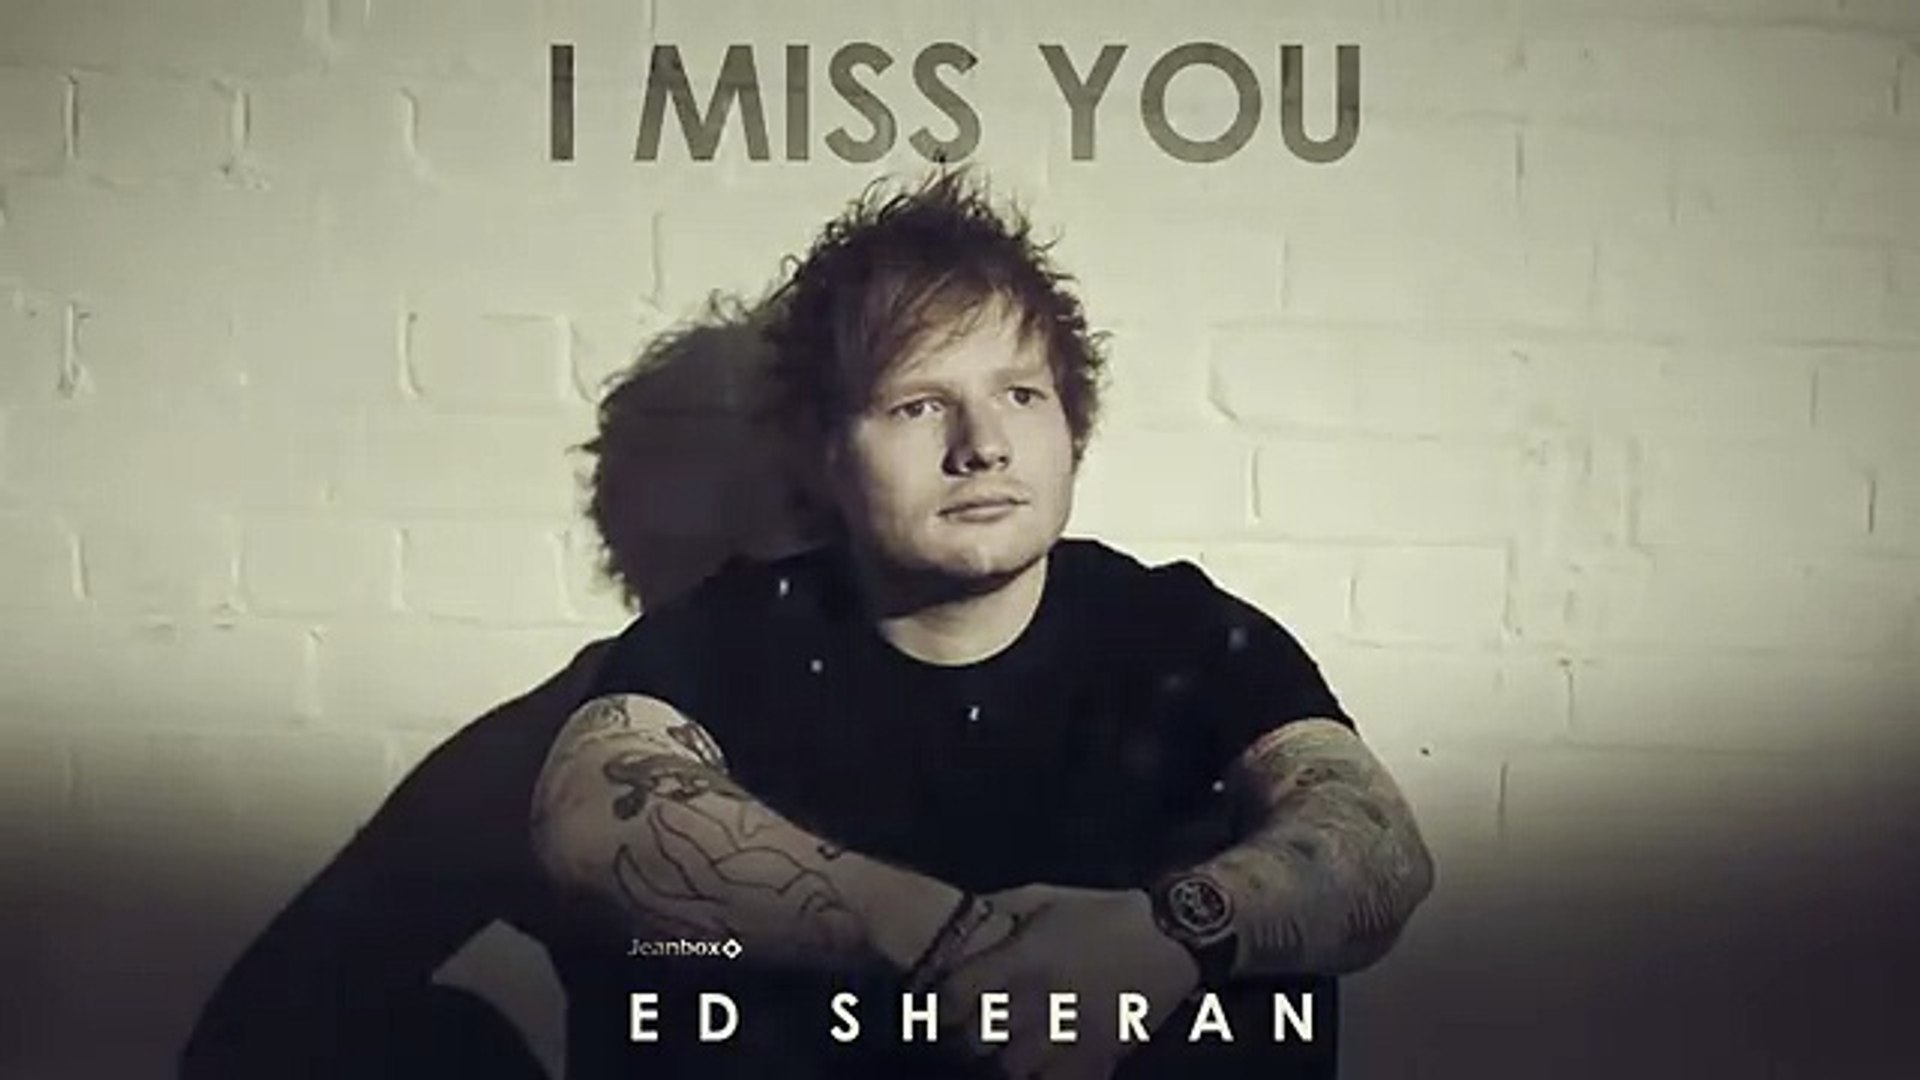 Ed Sheeran - I miss you (New song 2016)